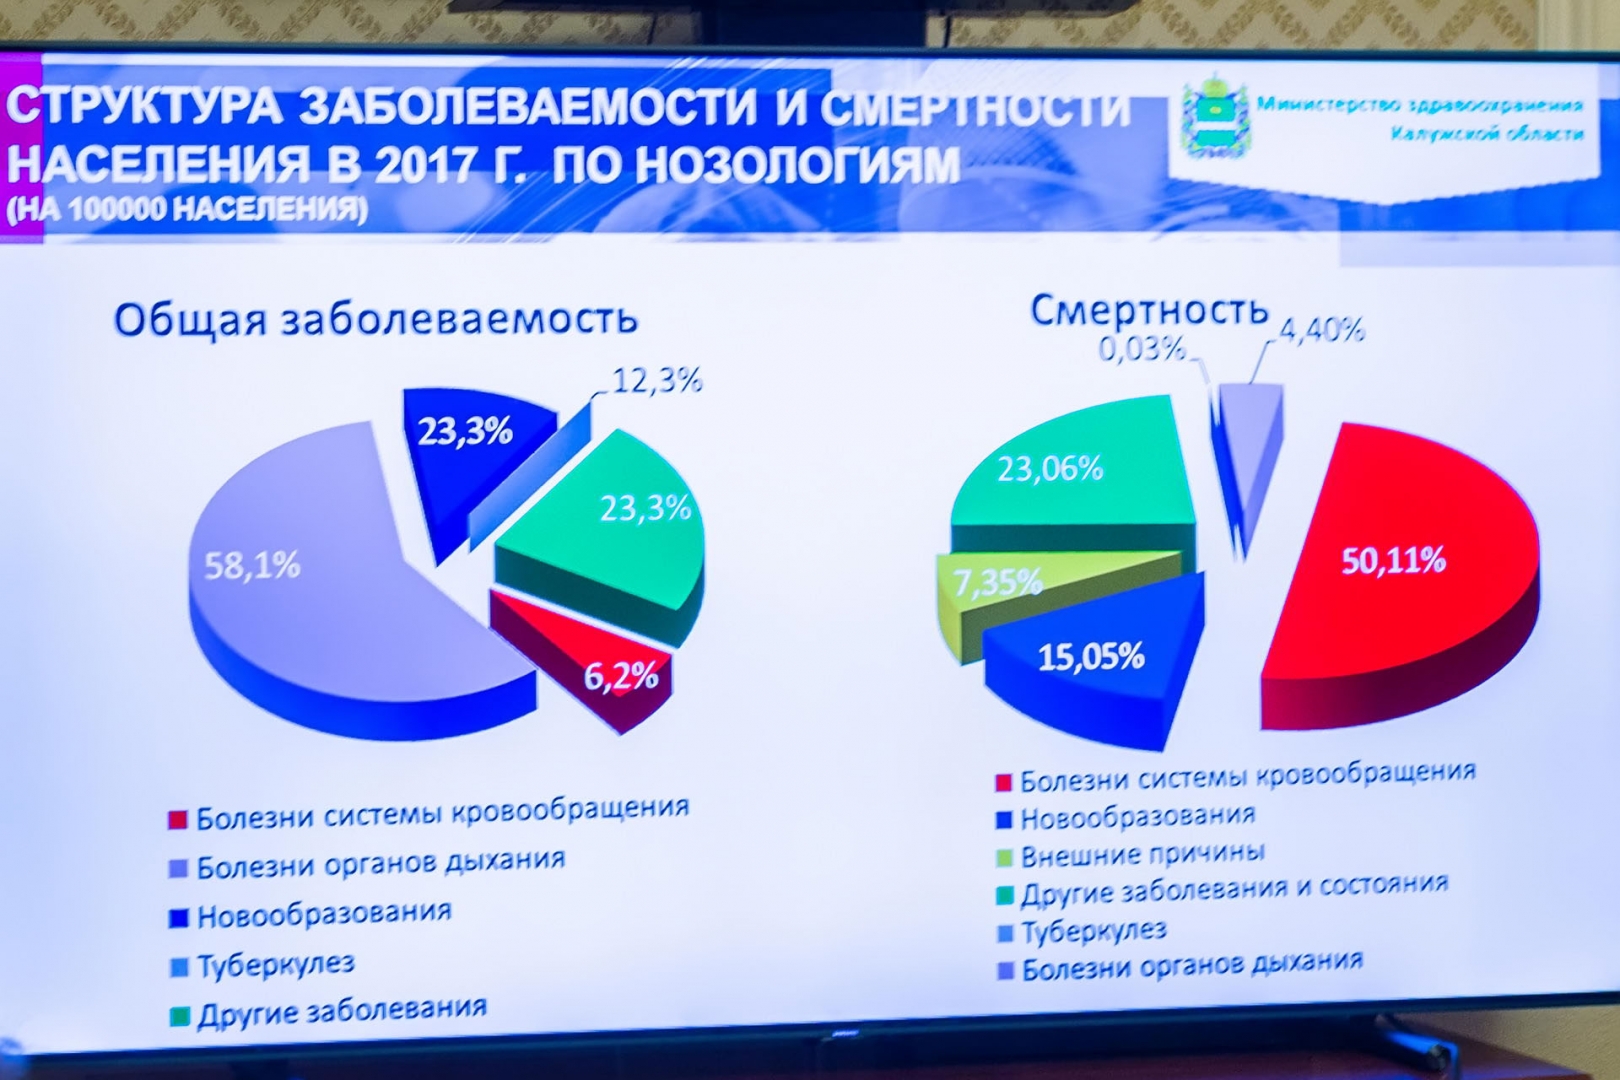 какой регион занимает 1 место по онкологии тов глобал кредит - кредиты онлайн на карту 24/7 киев